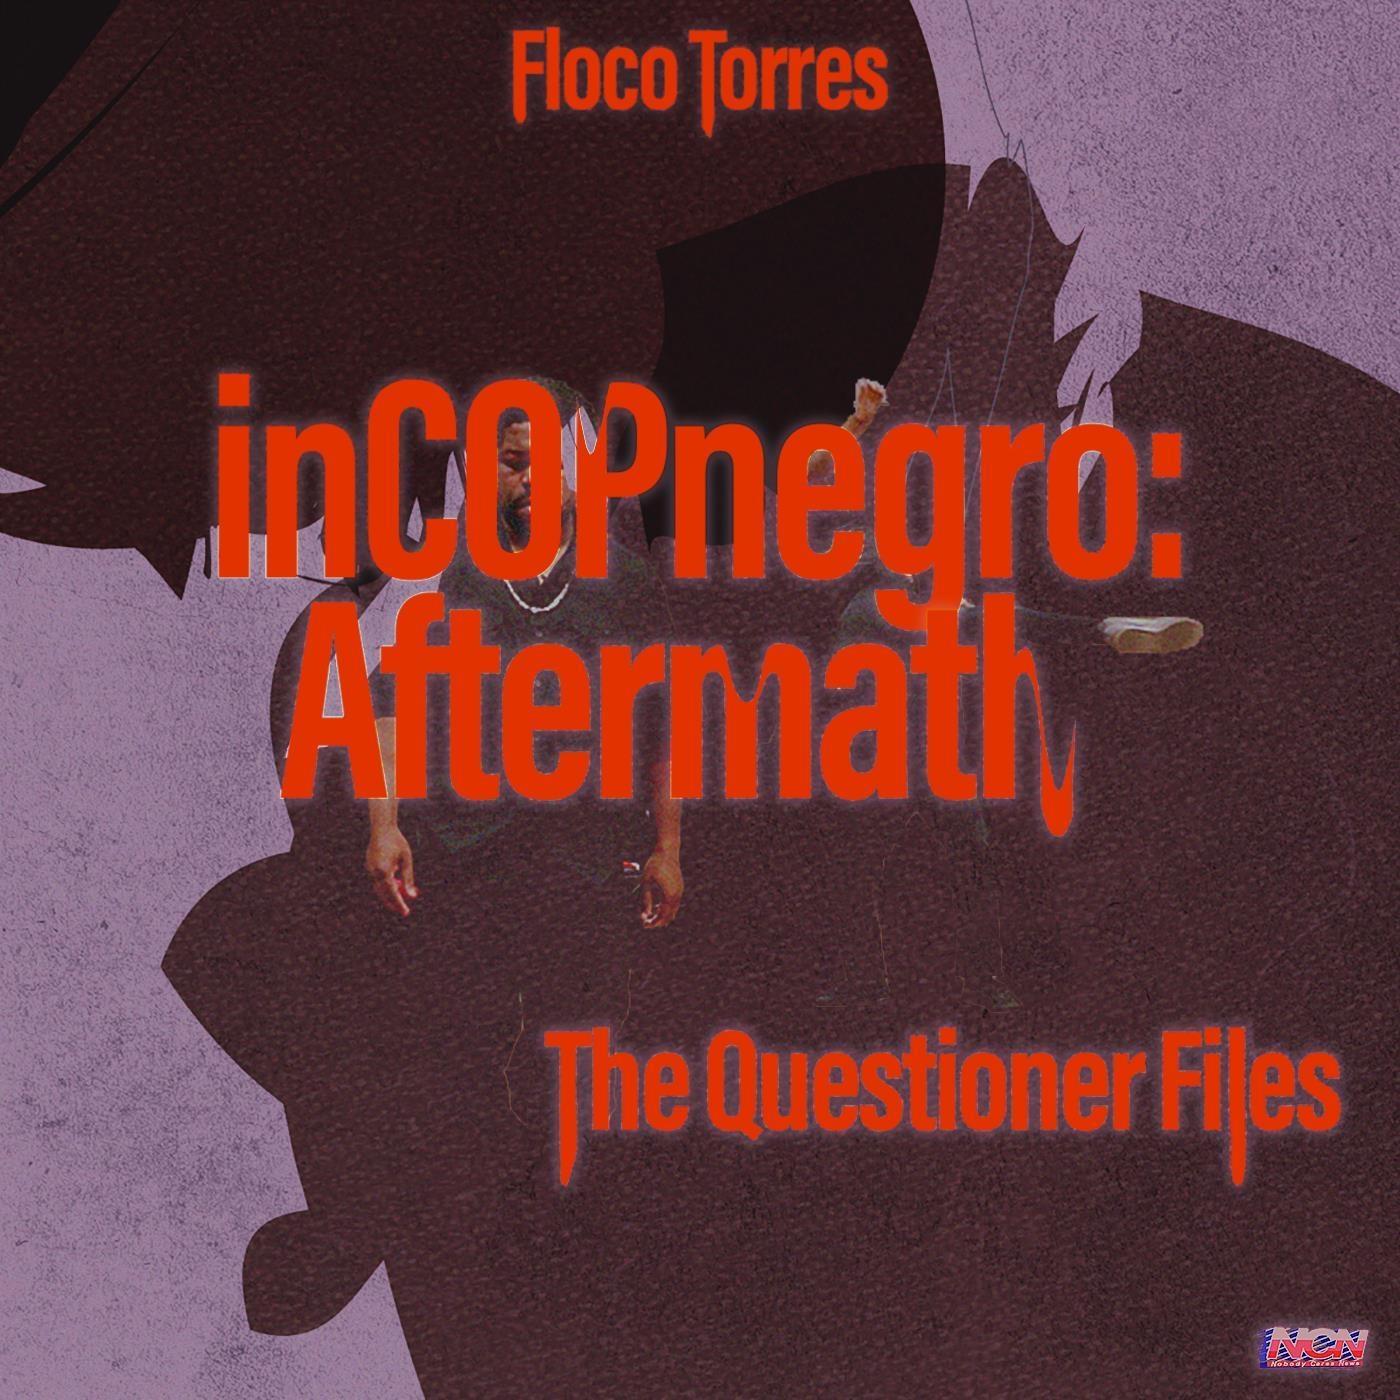 Floco Torres - The Pressure